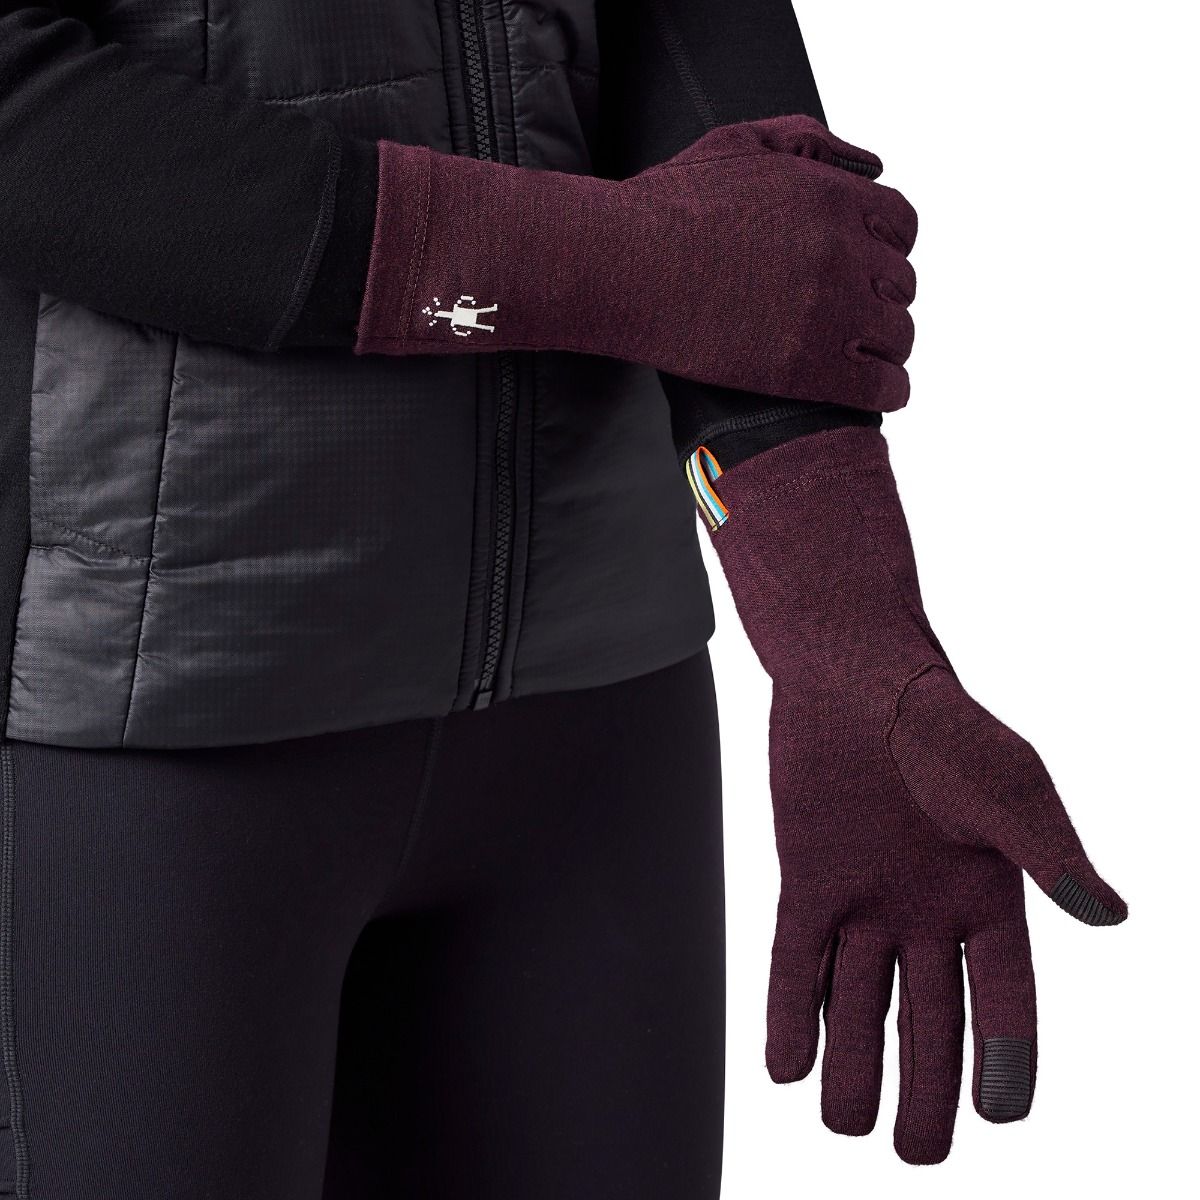 Merino 250 Glove | Smartwool Canada